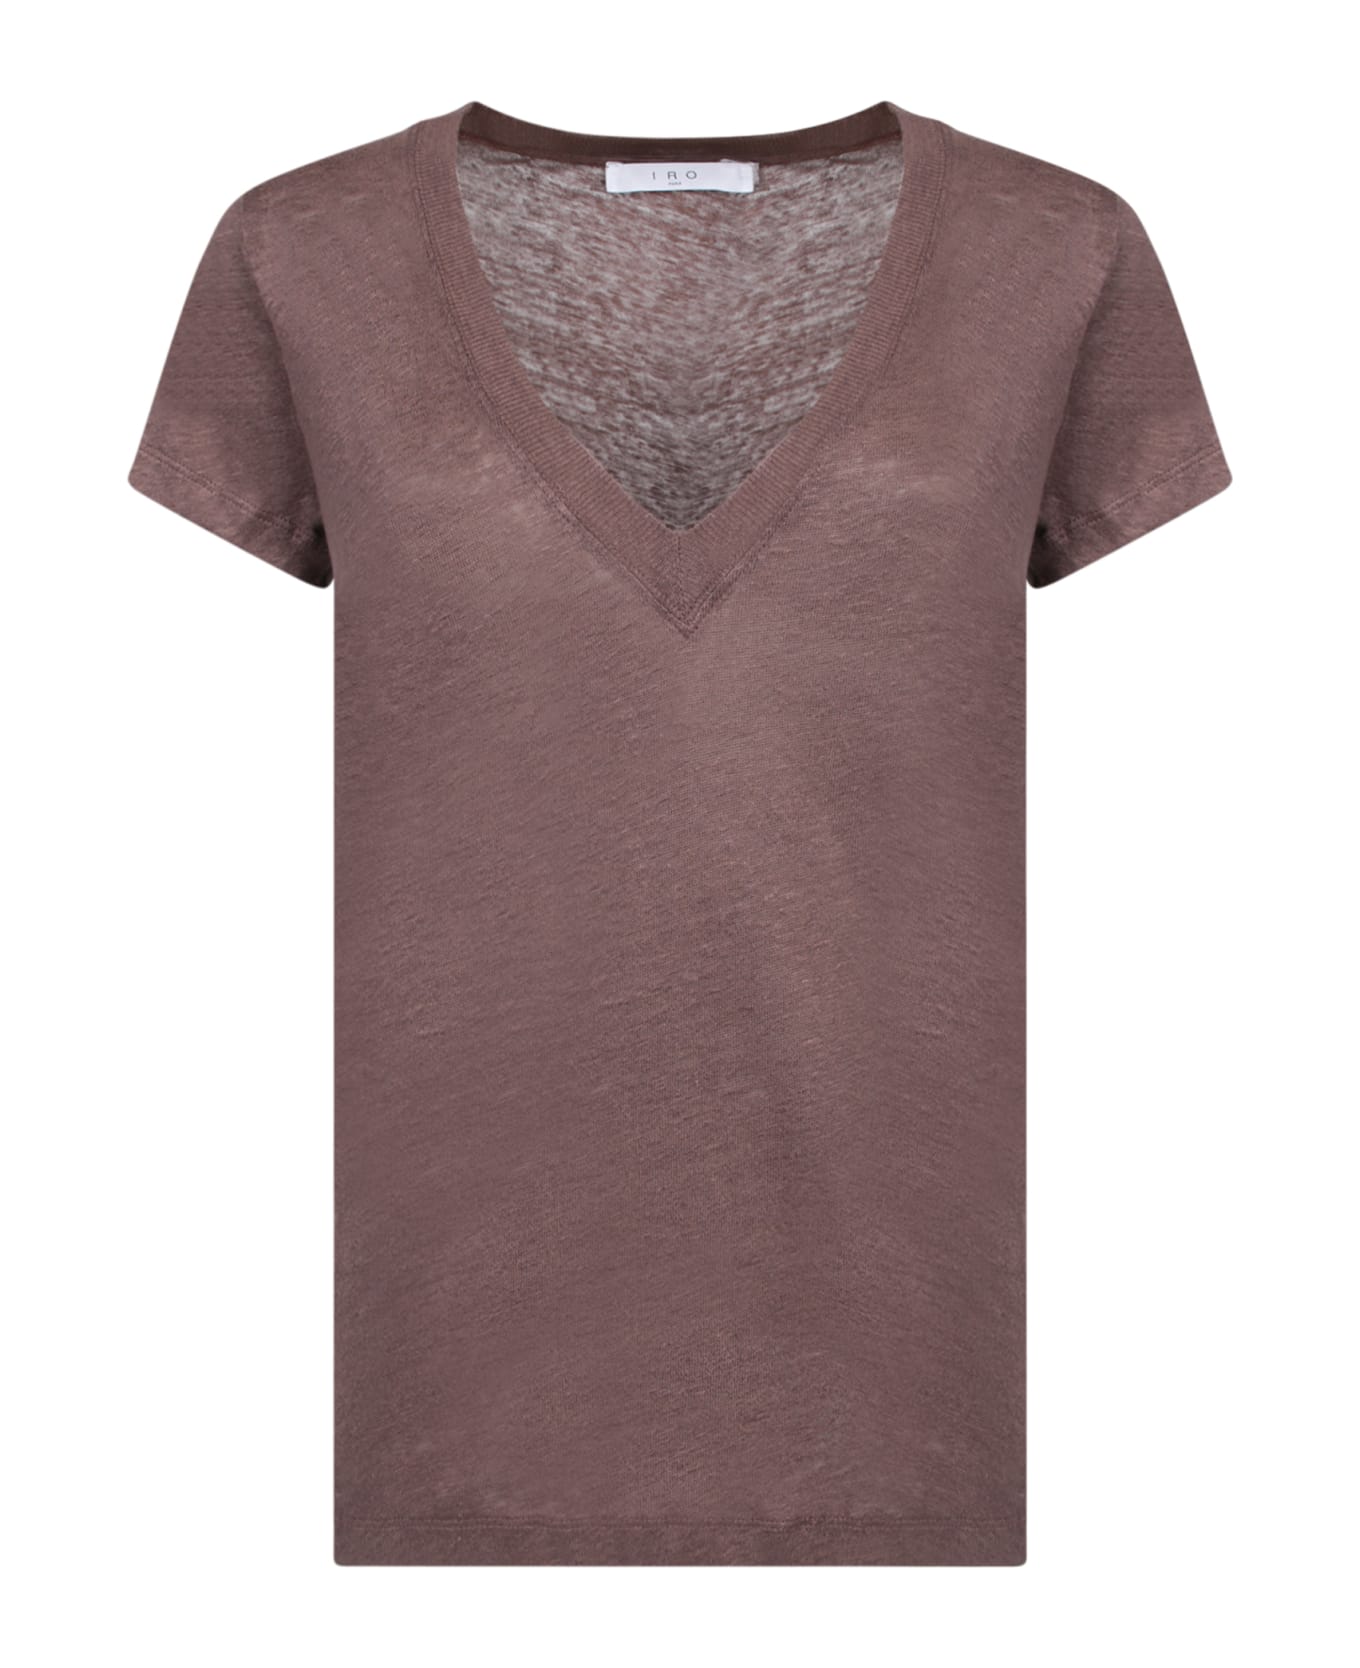 IRO Linen T-shirt In Brown - Brown Tシャツ